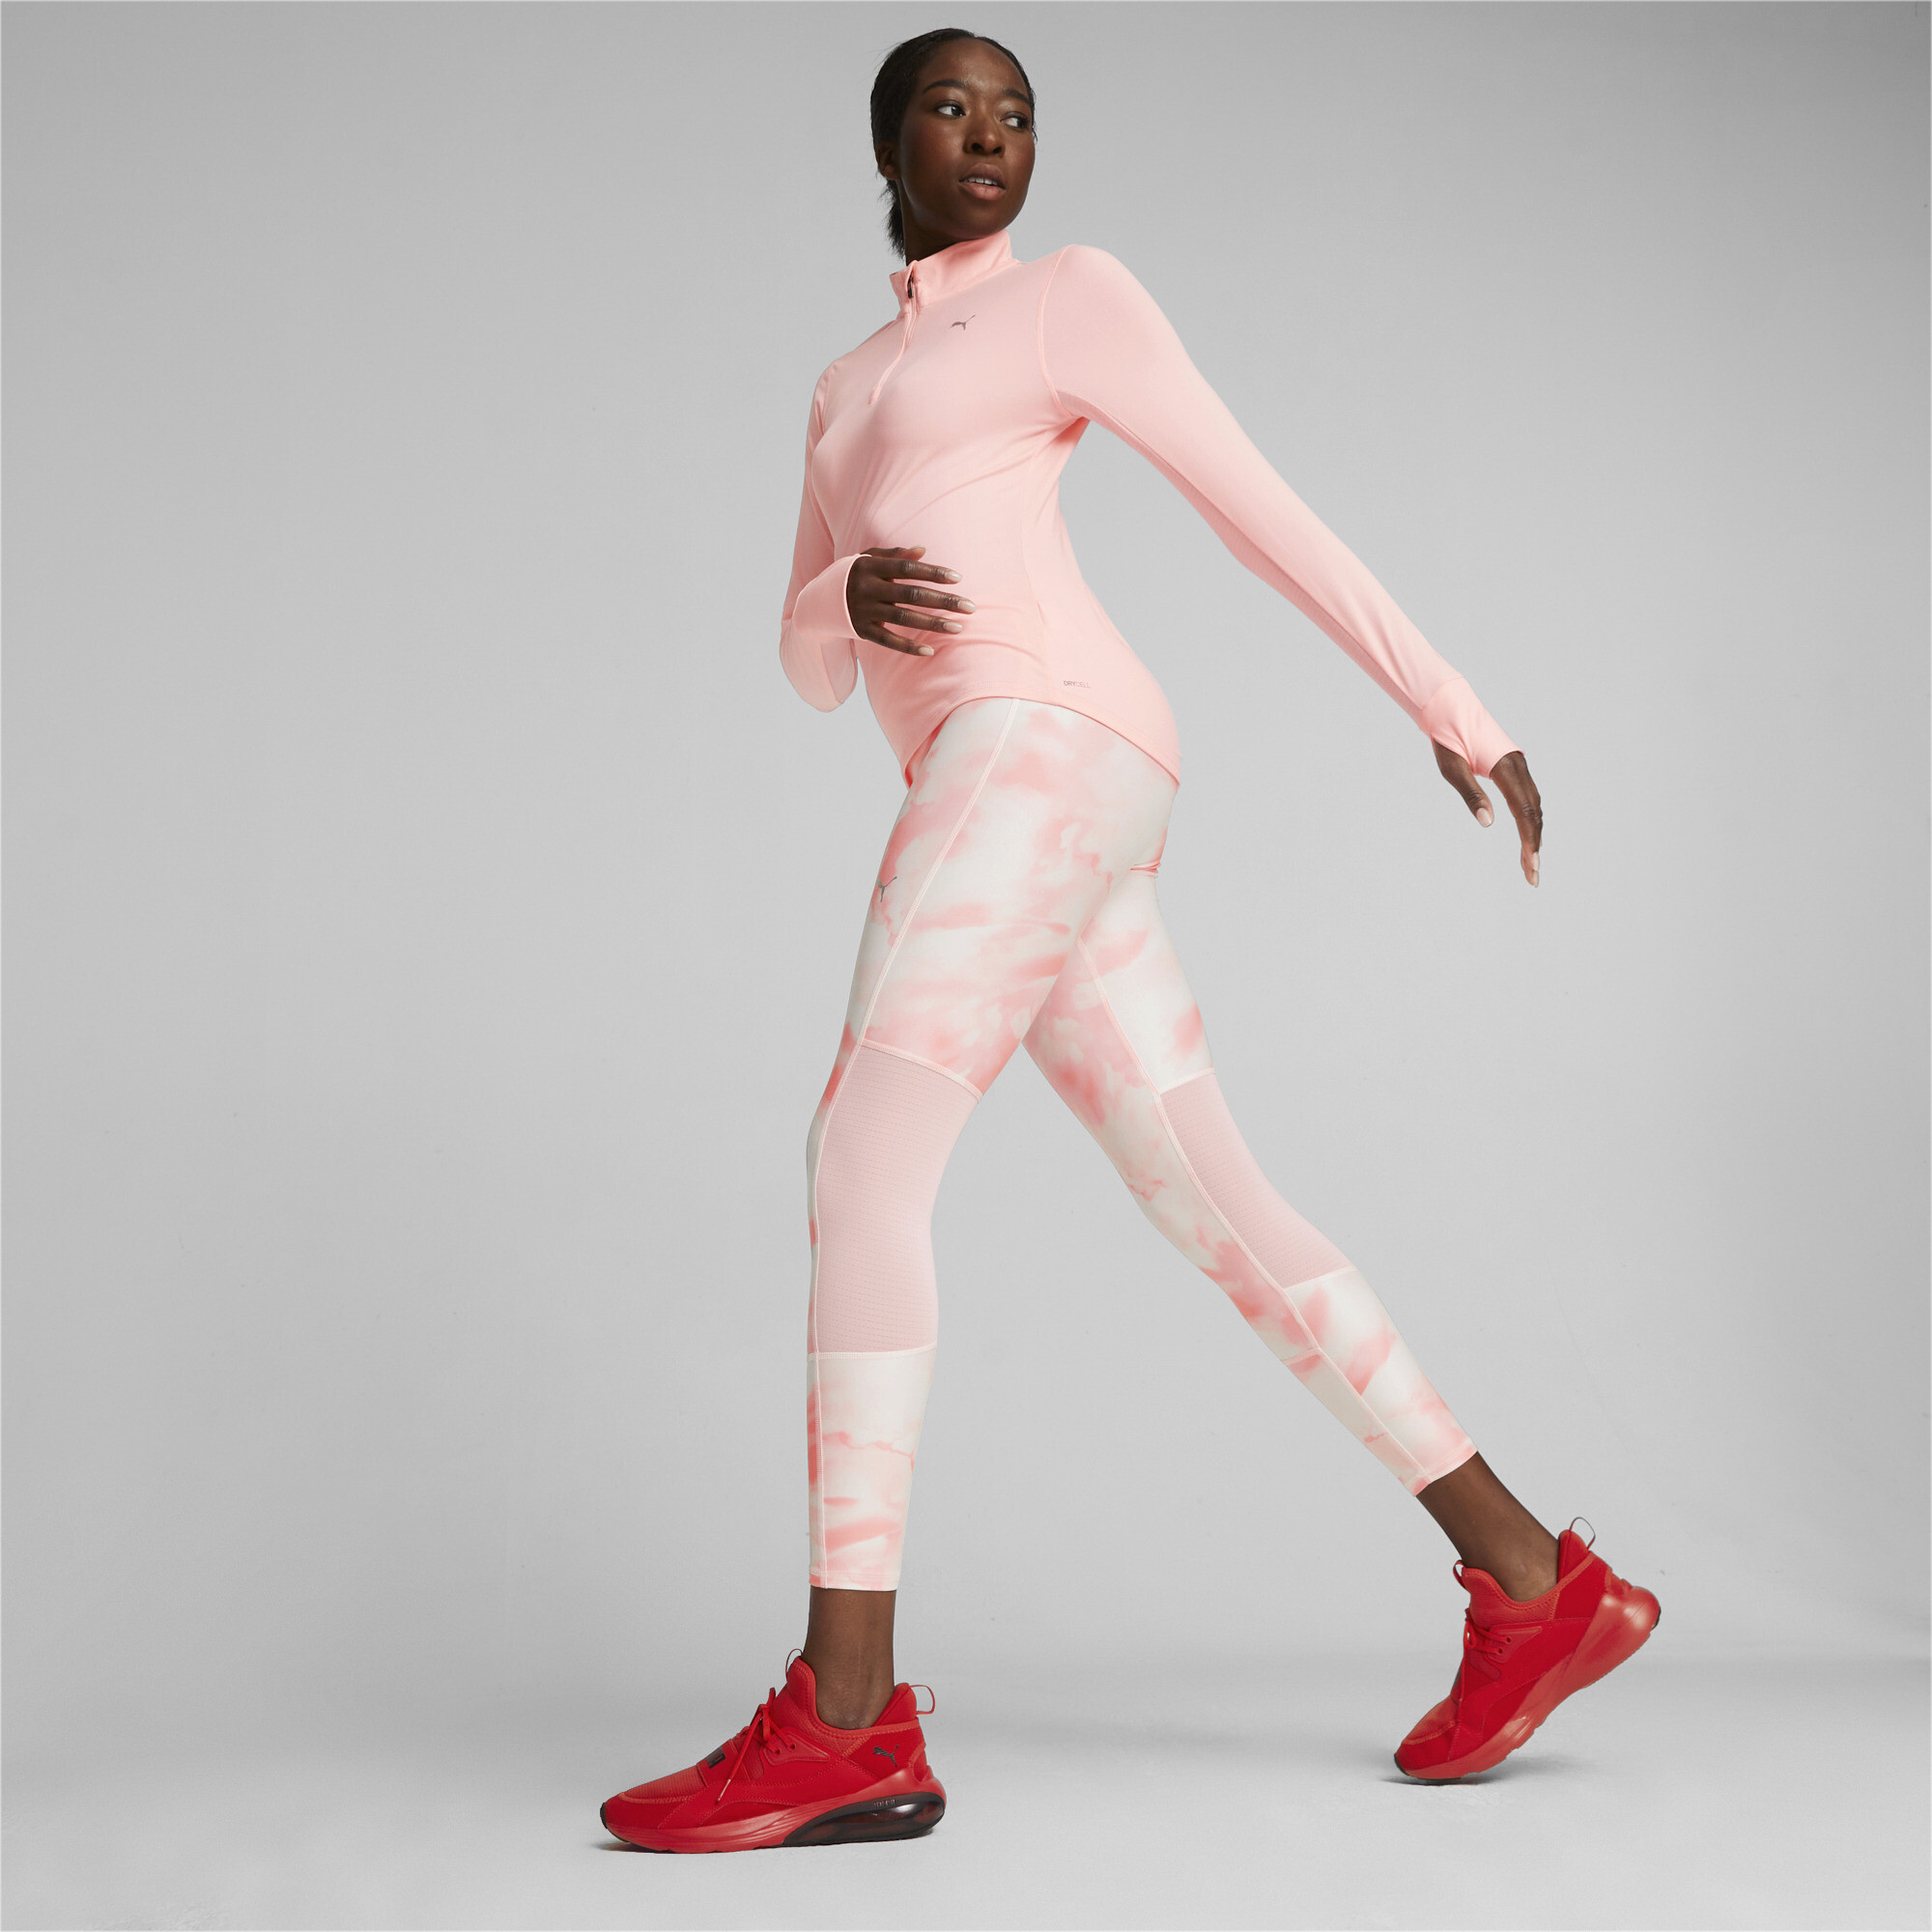 Women's Puma Run Favourite Quarter-Zip Running Top, Pink, Size XS, Clothing